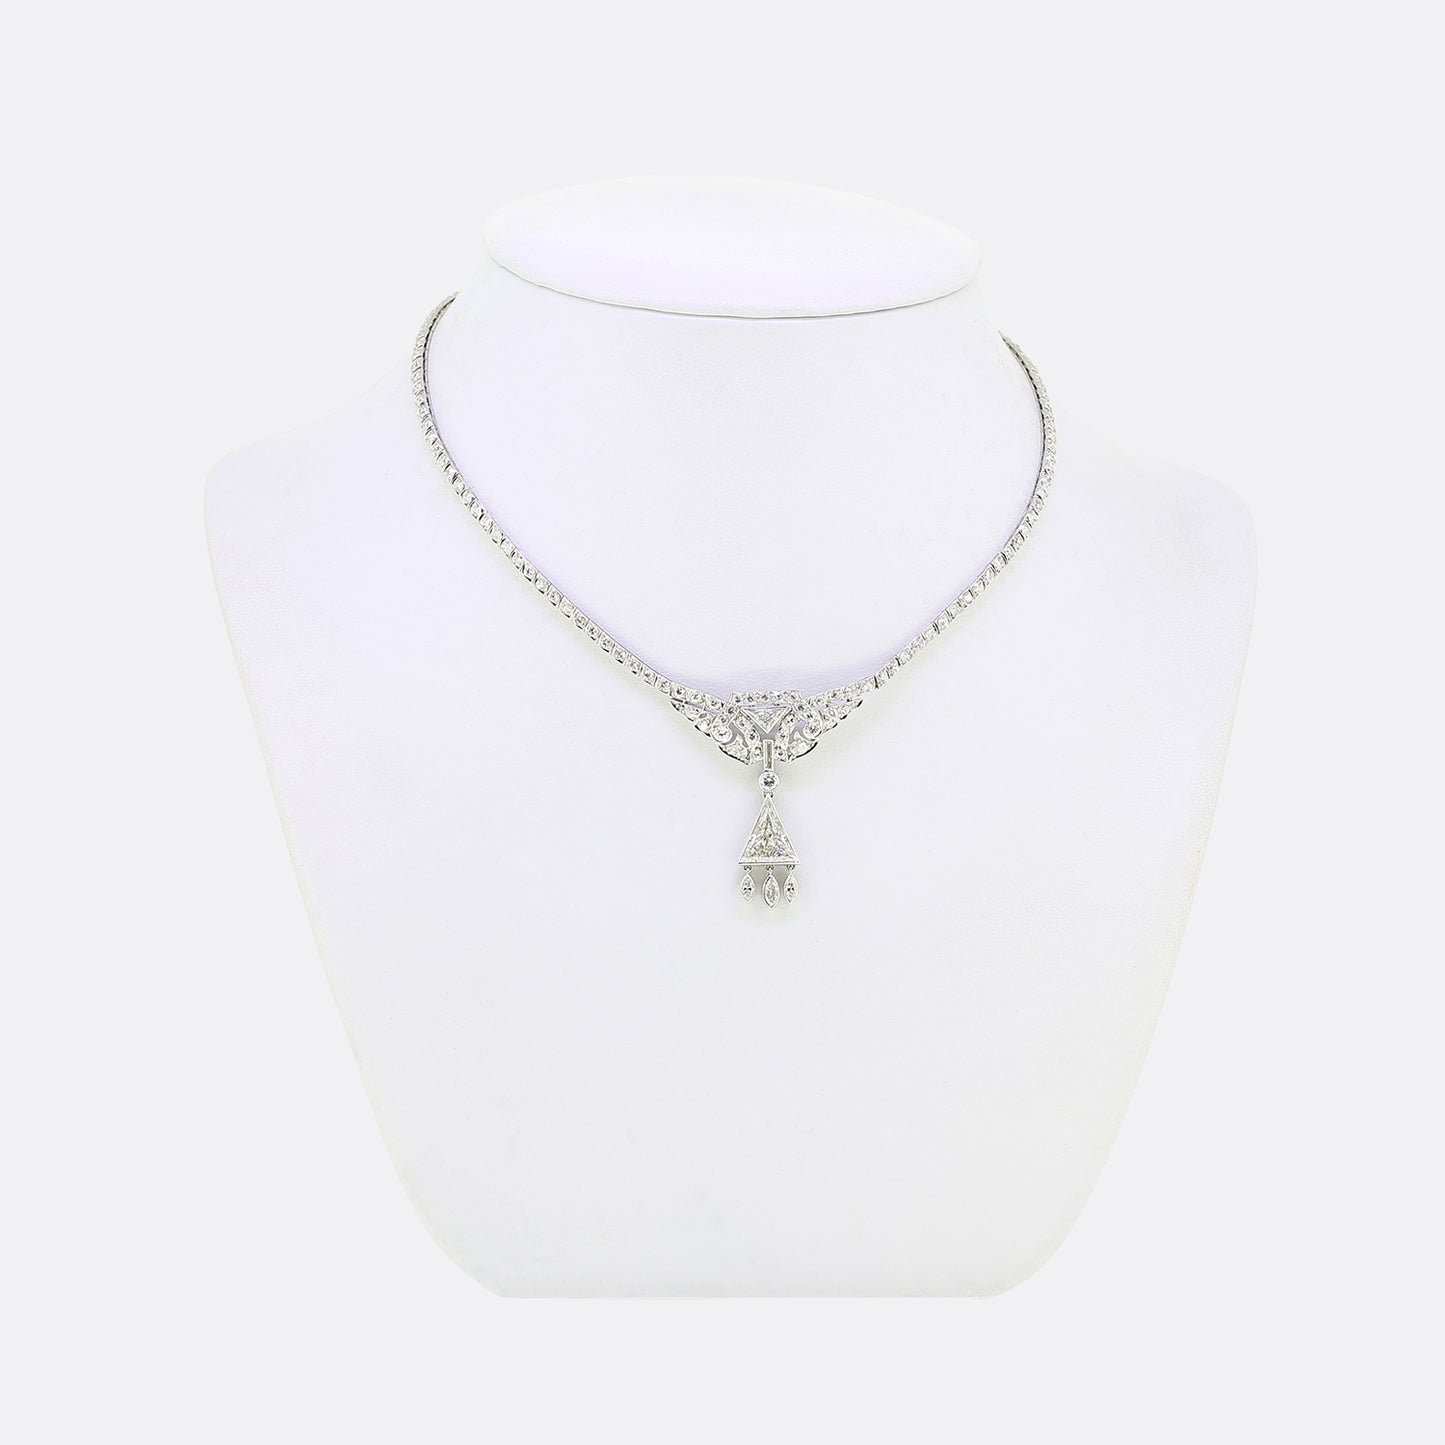 Art Deco 3.90 Carat Diamond Cluster Necklace